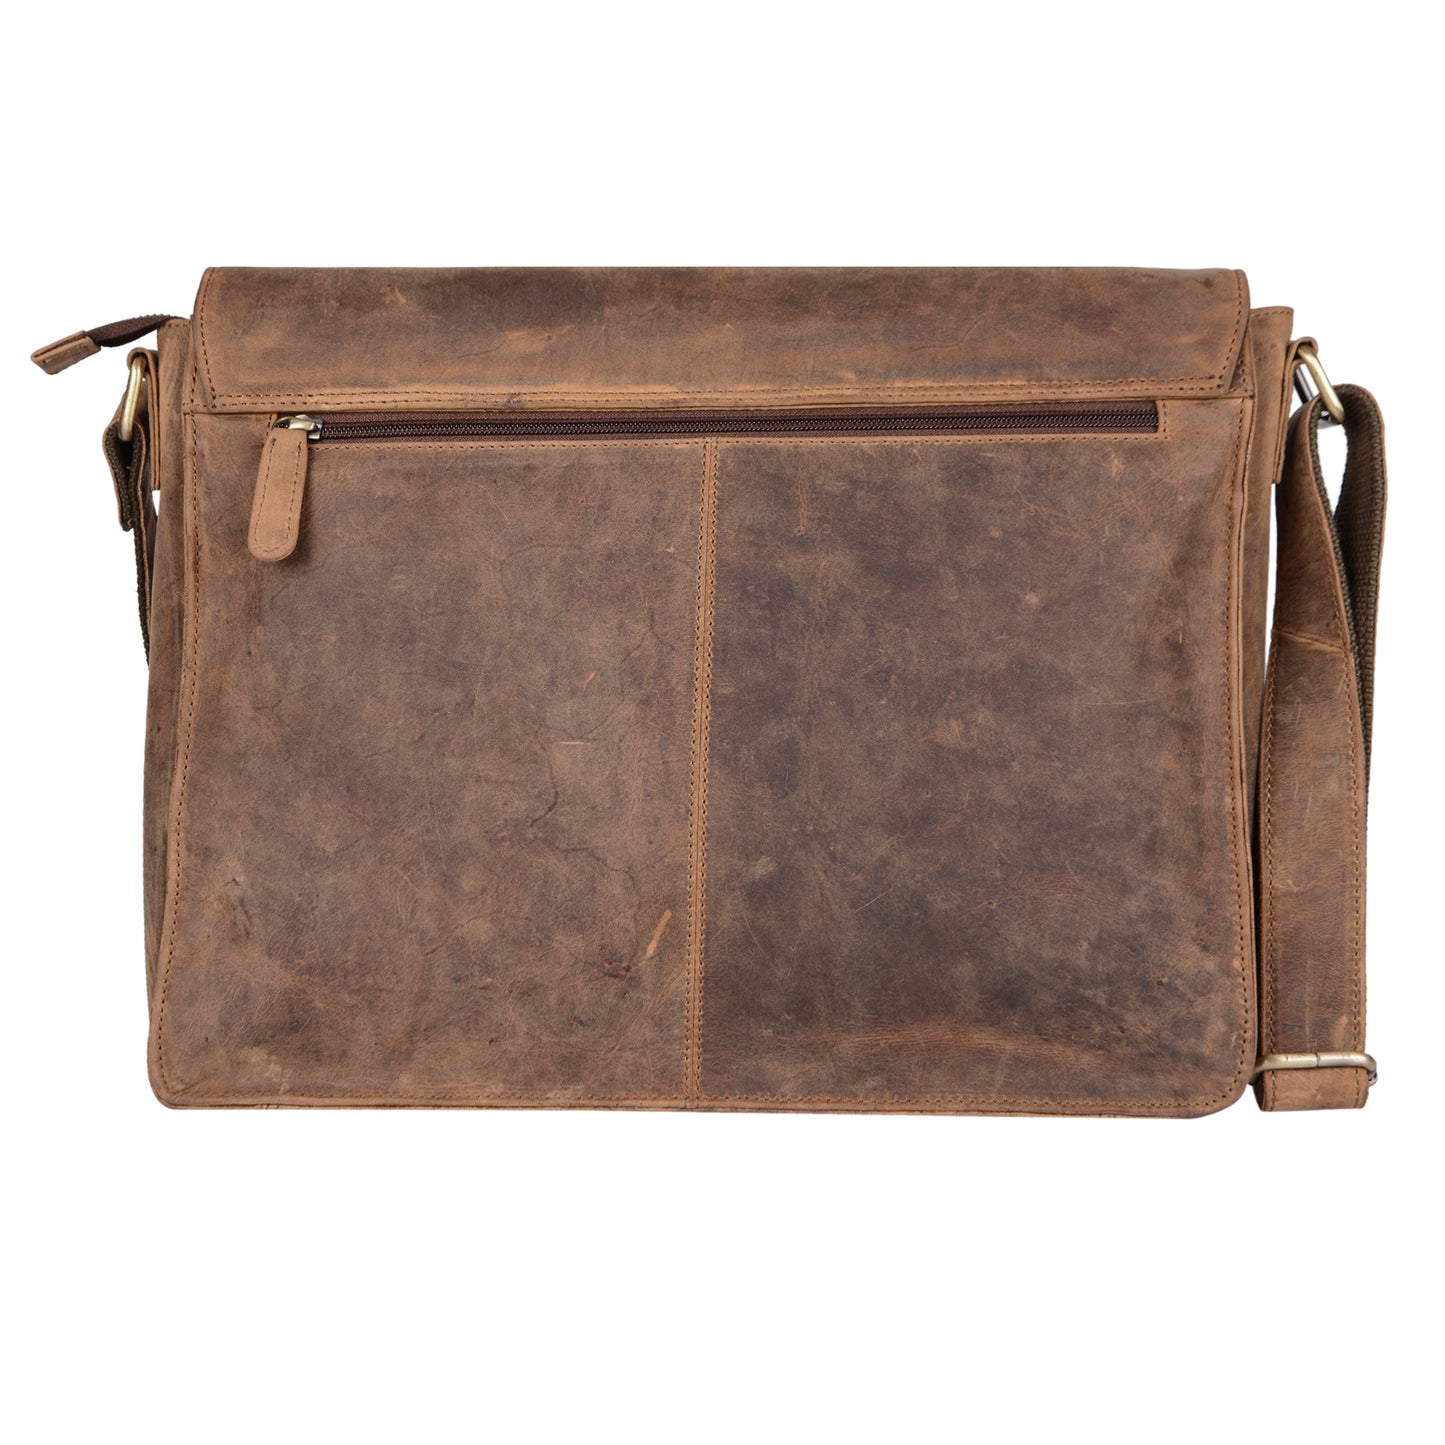 Calfnero Genuine Leather Men's Messenger Bag (E-113 Tan)